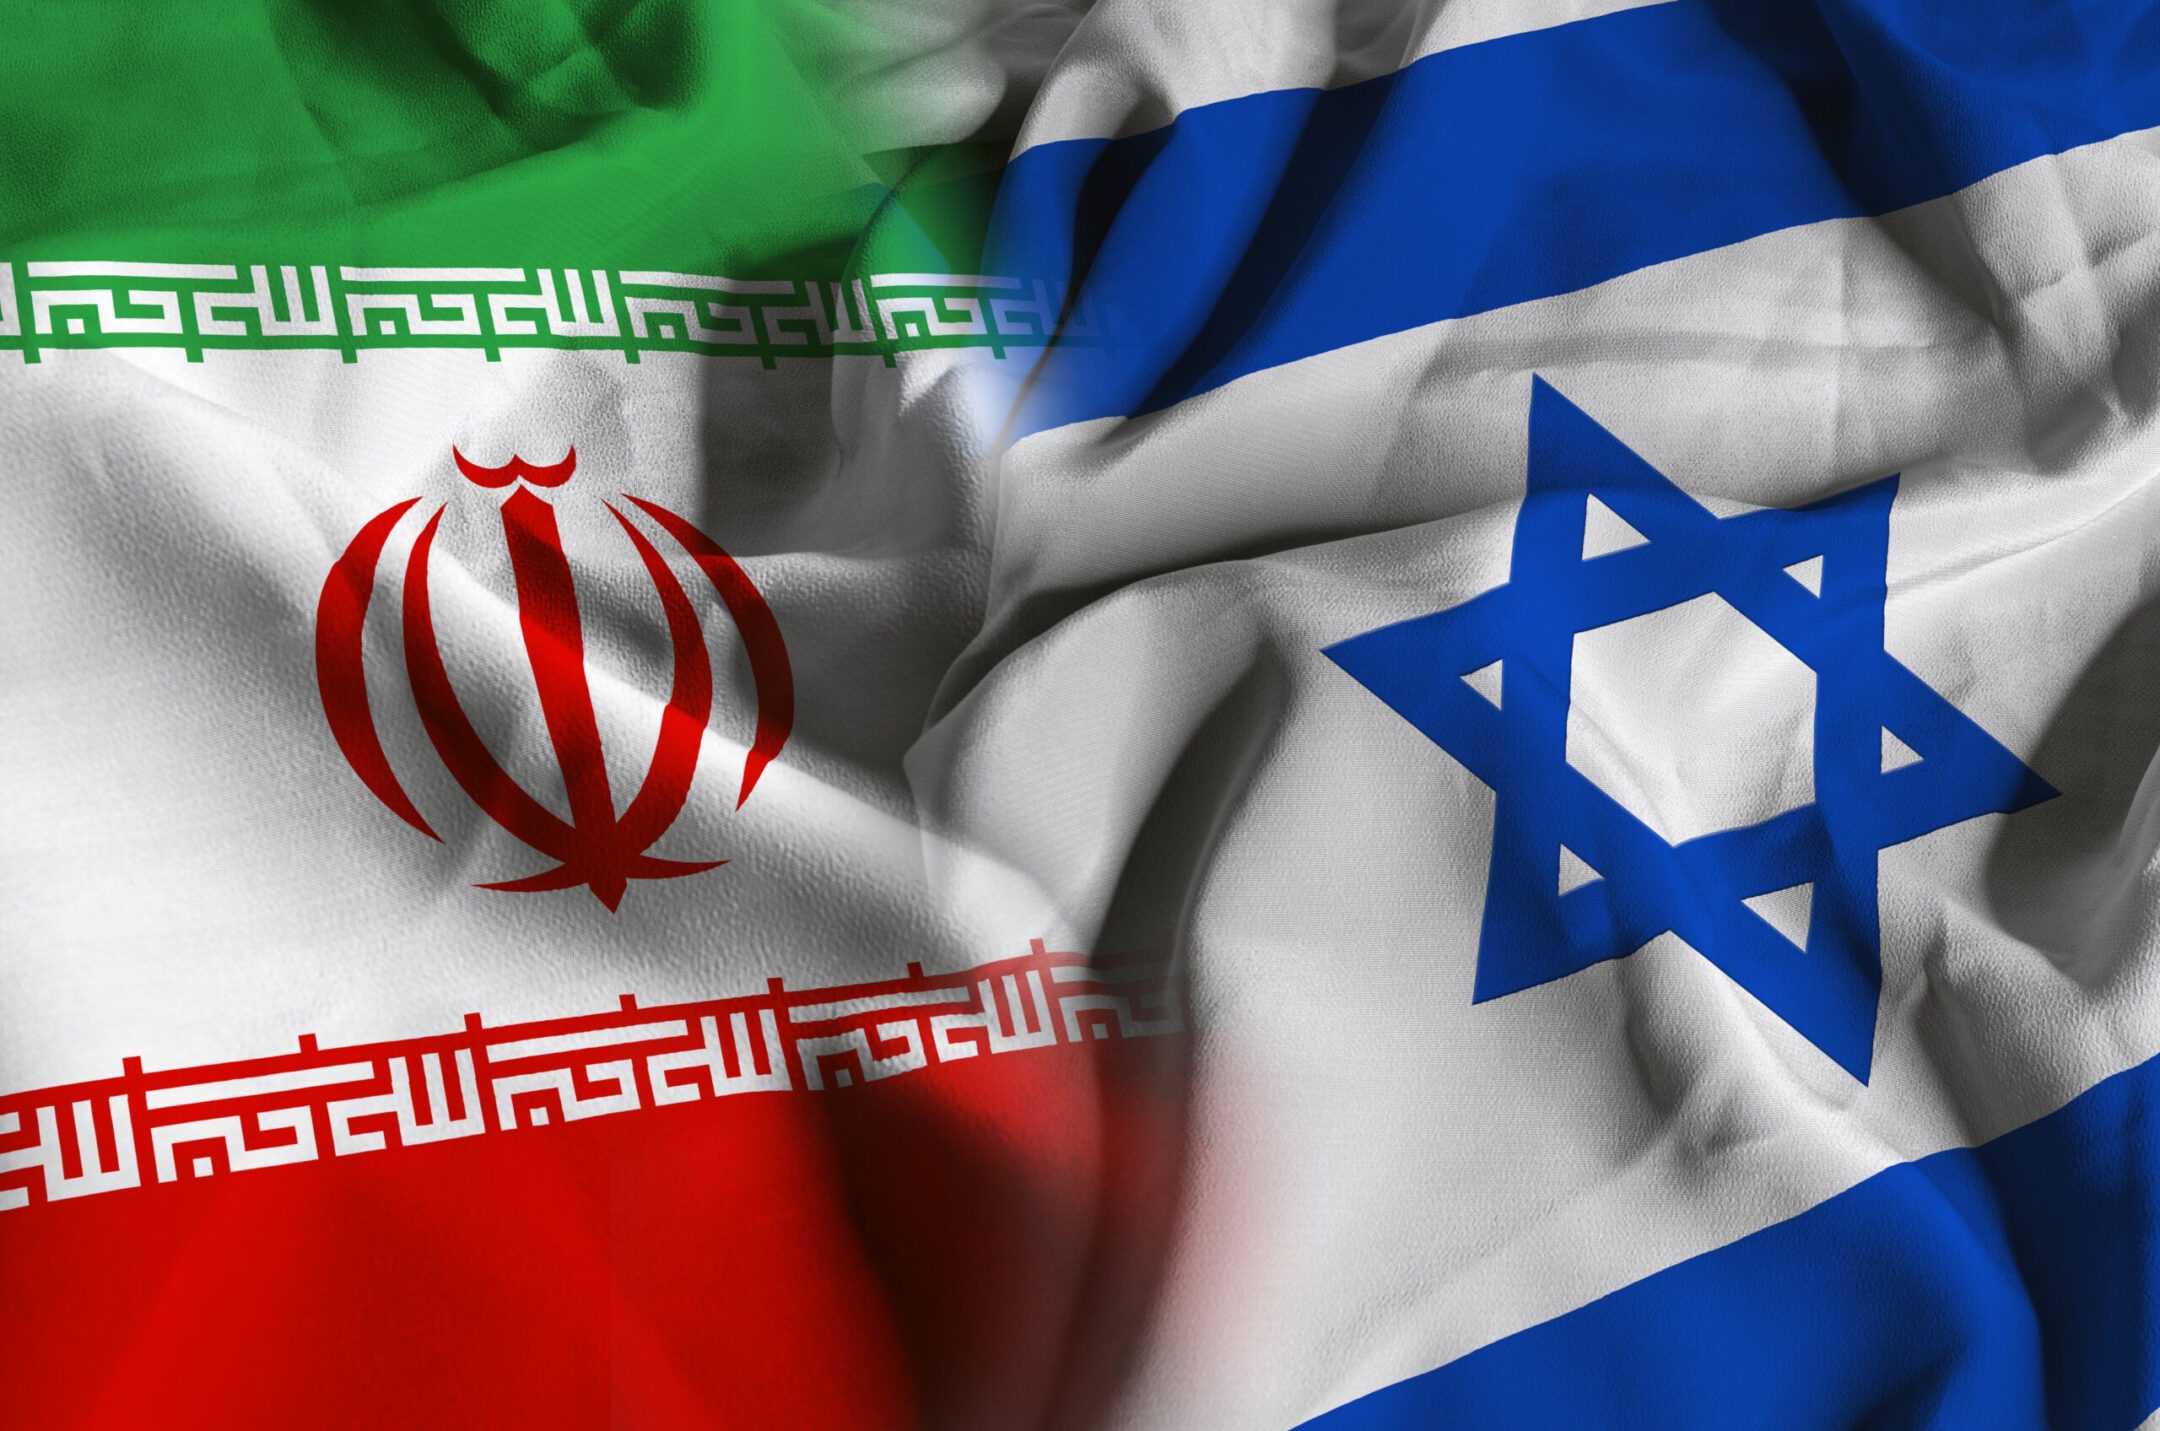 לפי הדיווחים, ישראל תקפה באיראן, ימים לאחר שהדיפה מתקפת טילים איראנית